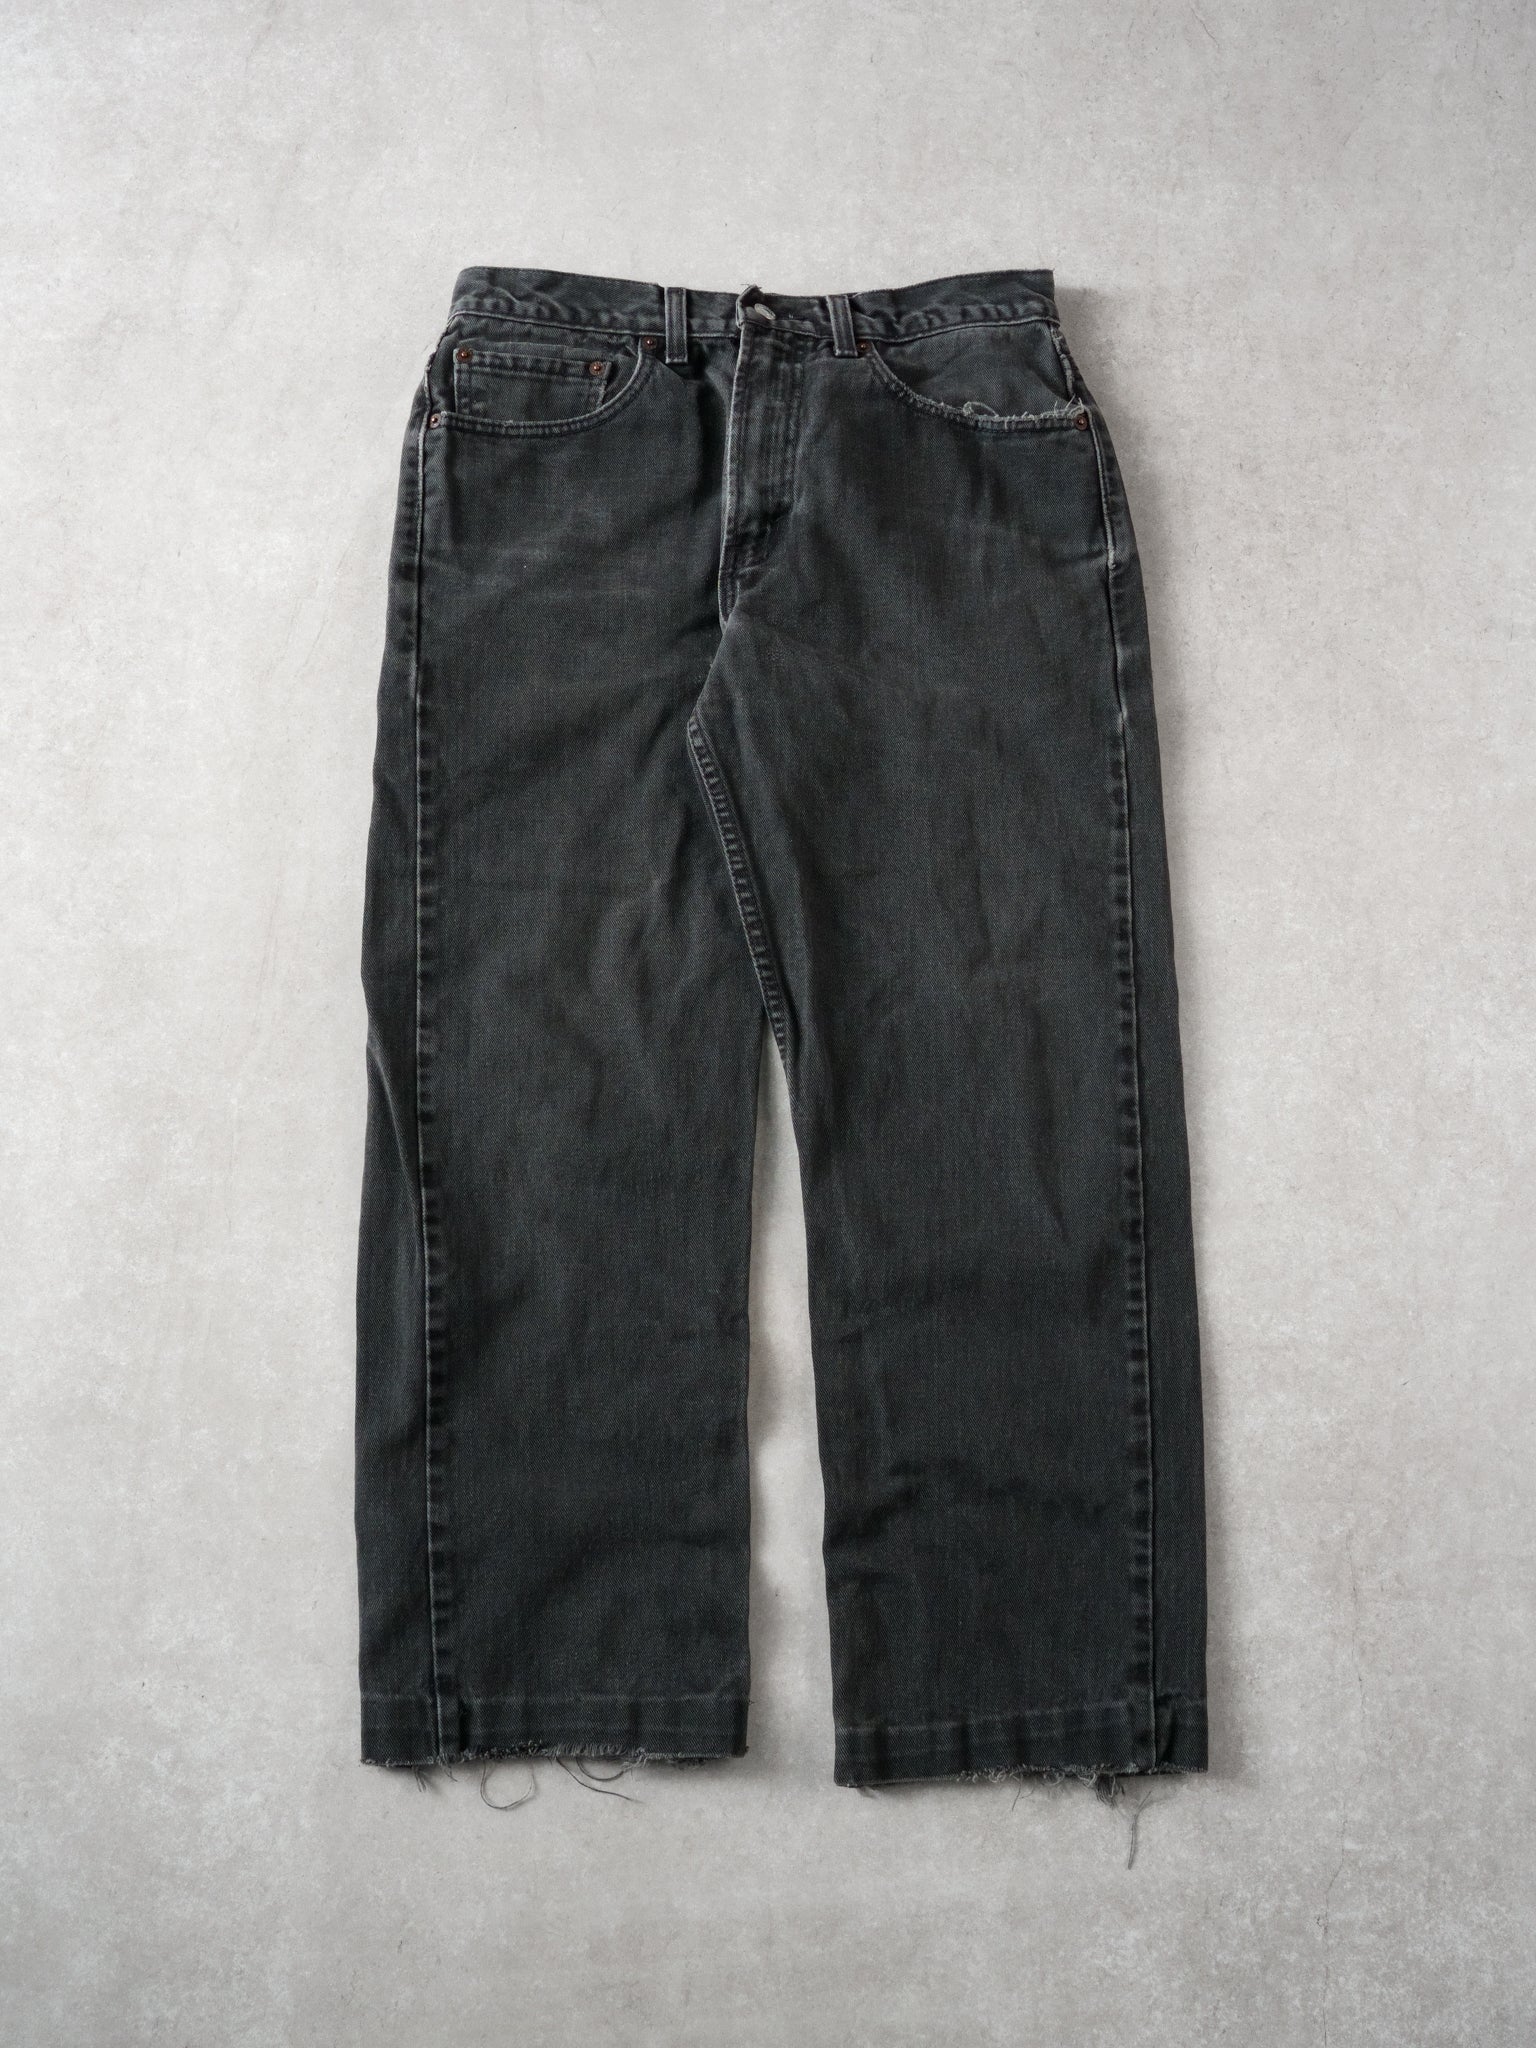 Vintage 90s Black Levi 505 Regular Fit Jeans (32 x 28)